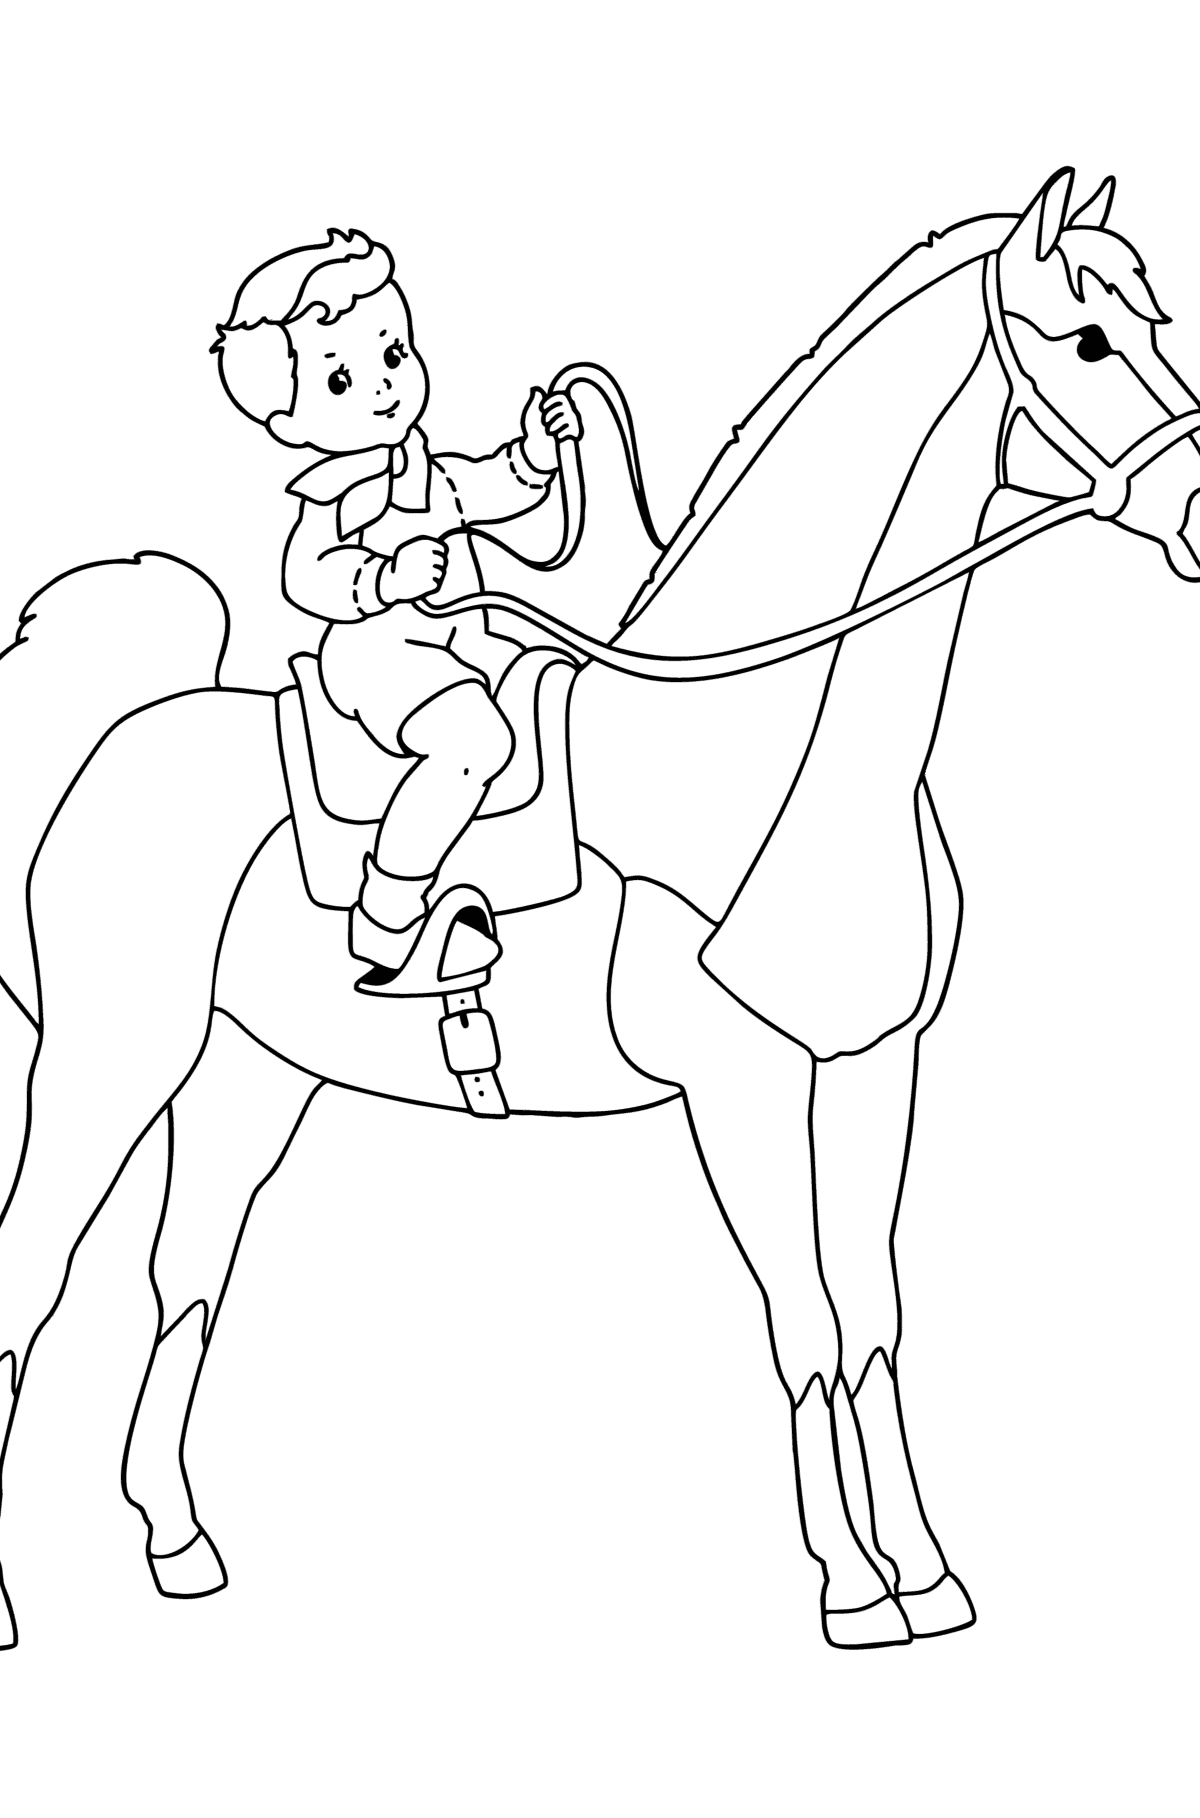 Målarbild Pojke på häst - Målarbilder För barn